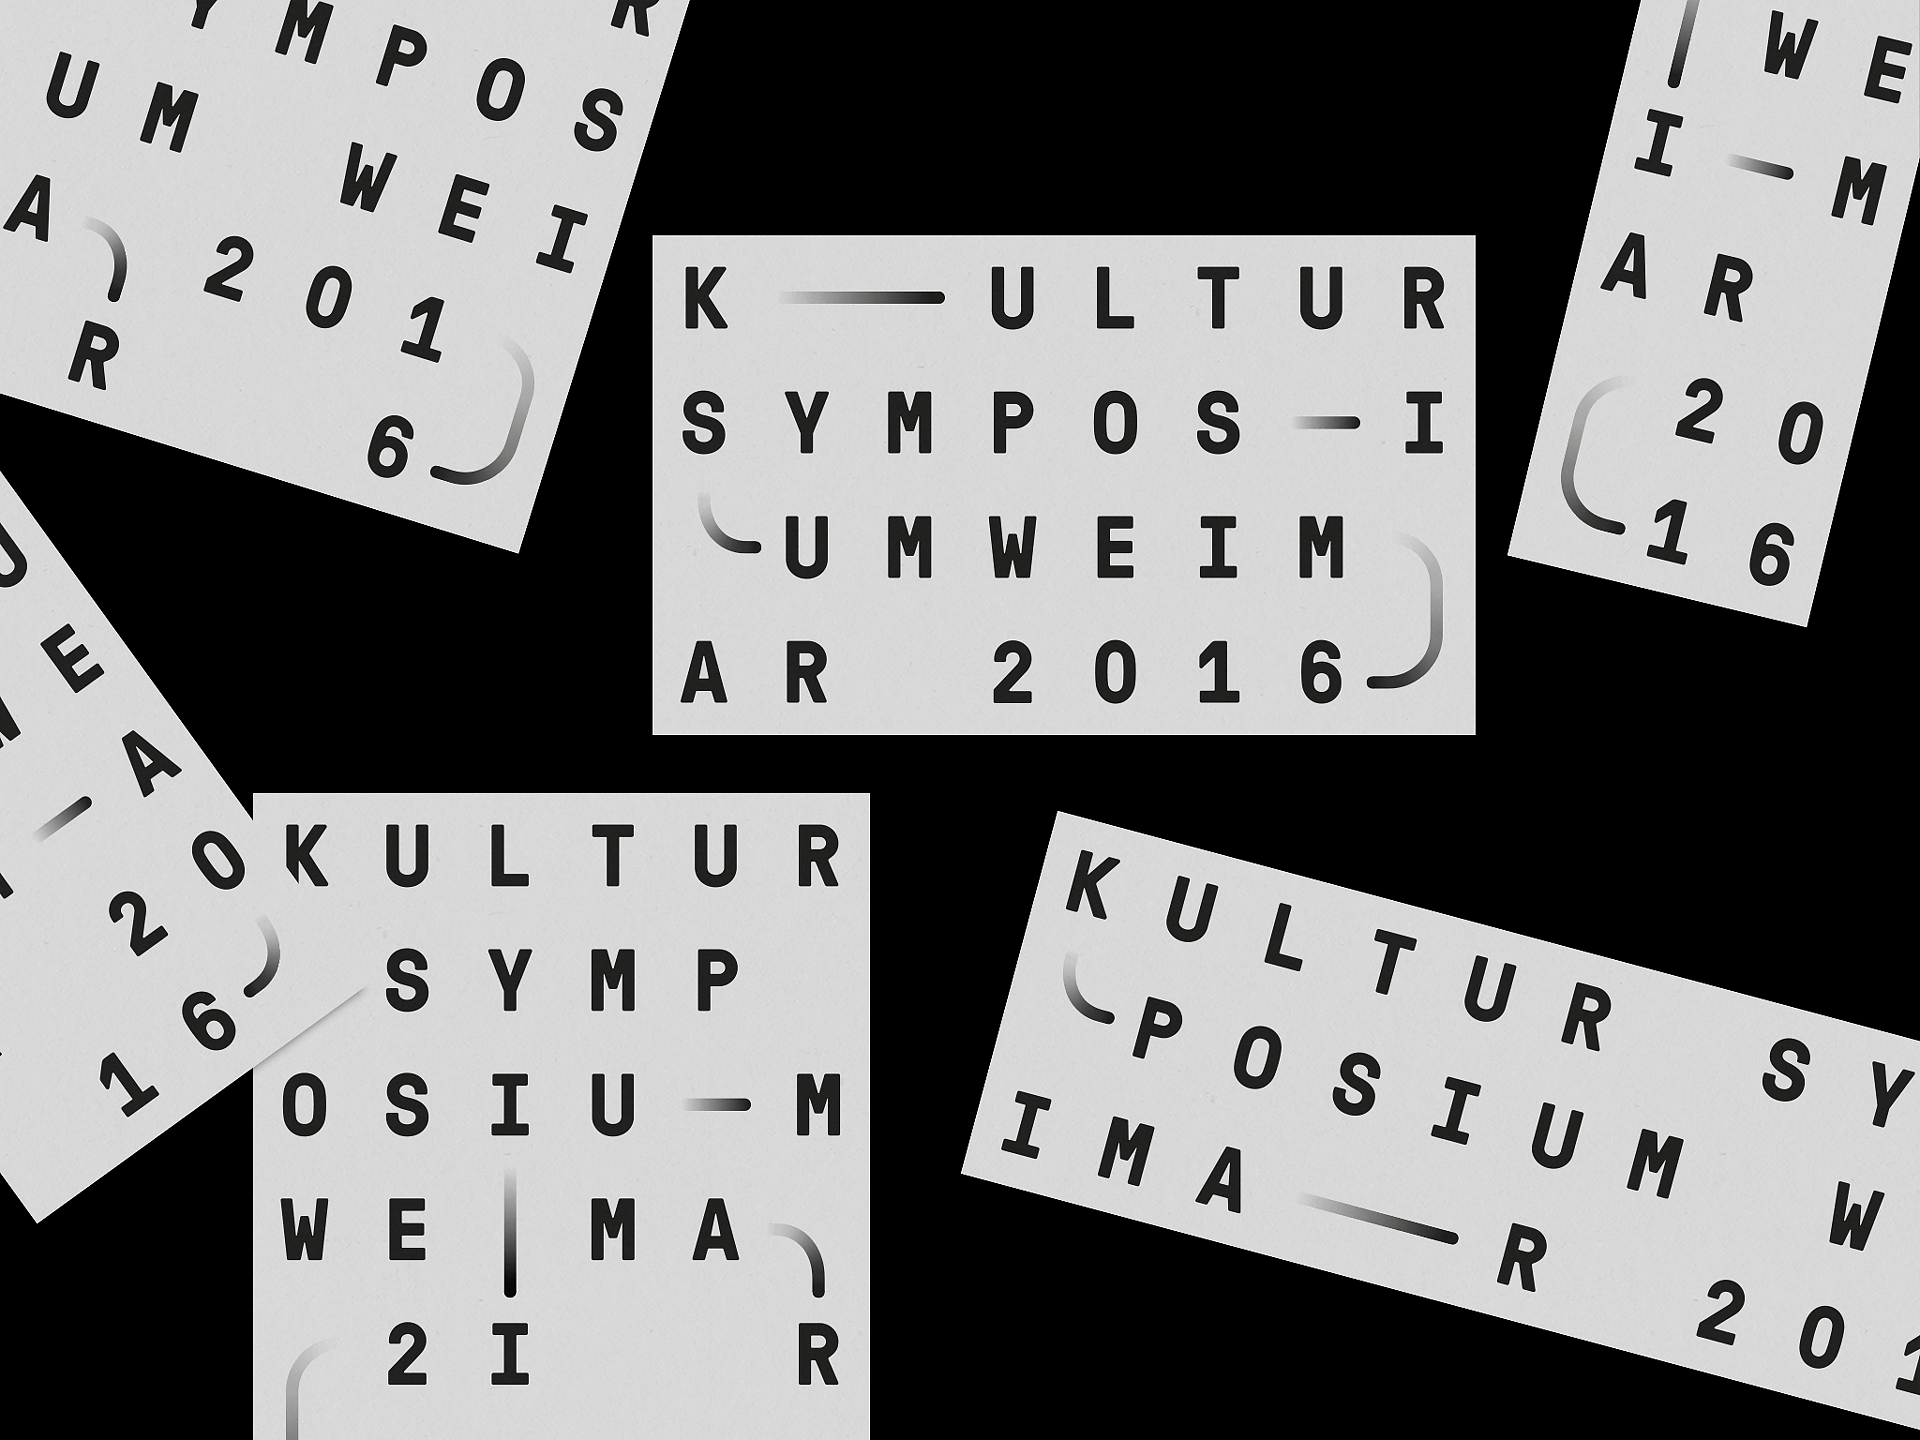 Kultursymposium Weimar 2016 (1)